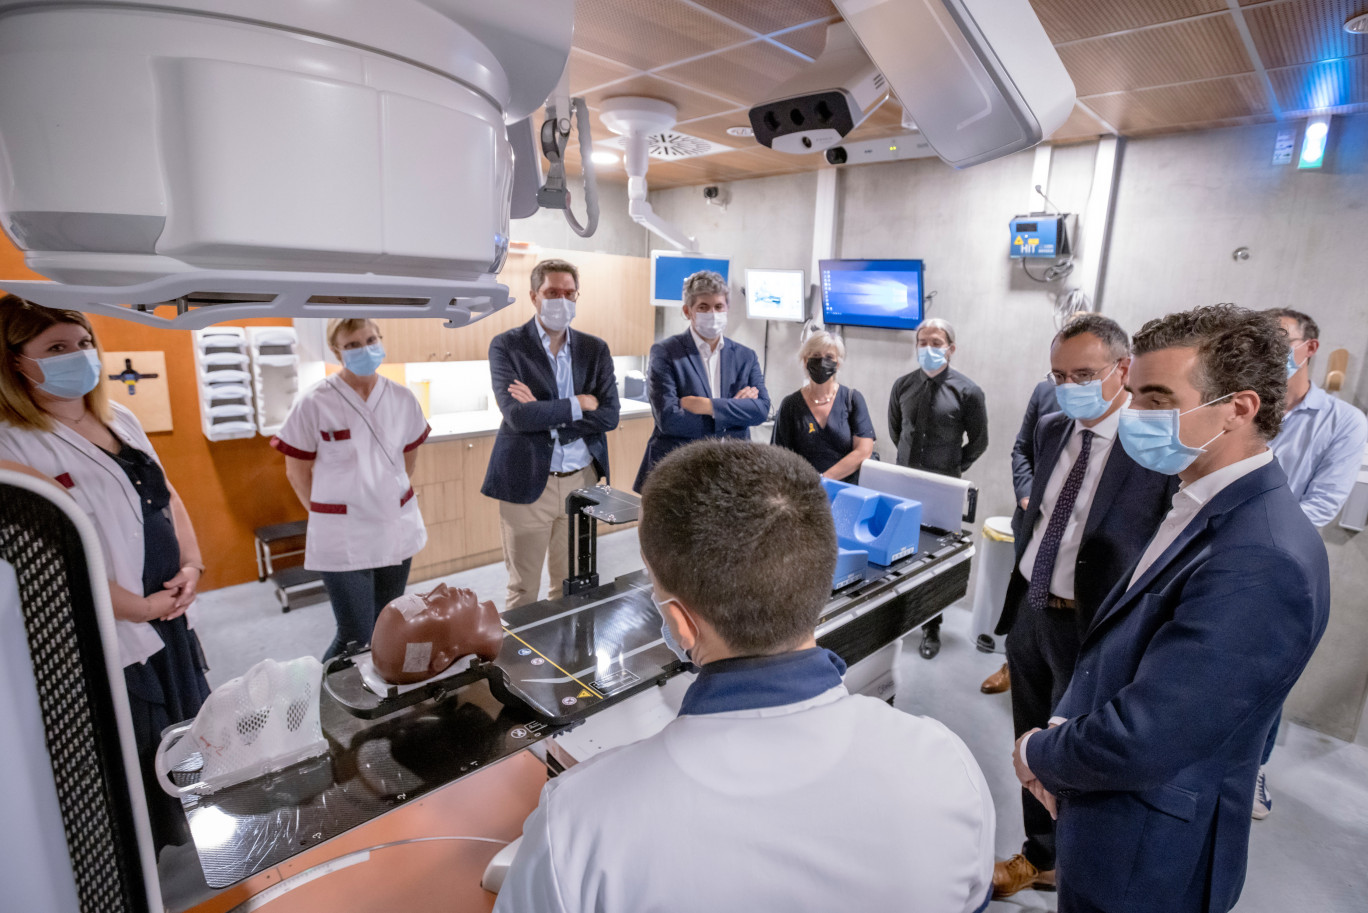 L’extension de plus de 400 m² de l’Institut de cancérologie de Bourgogne a été inaugurée le 15 septembre dernier. (© Institut de cancérologie de Bourgogne)